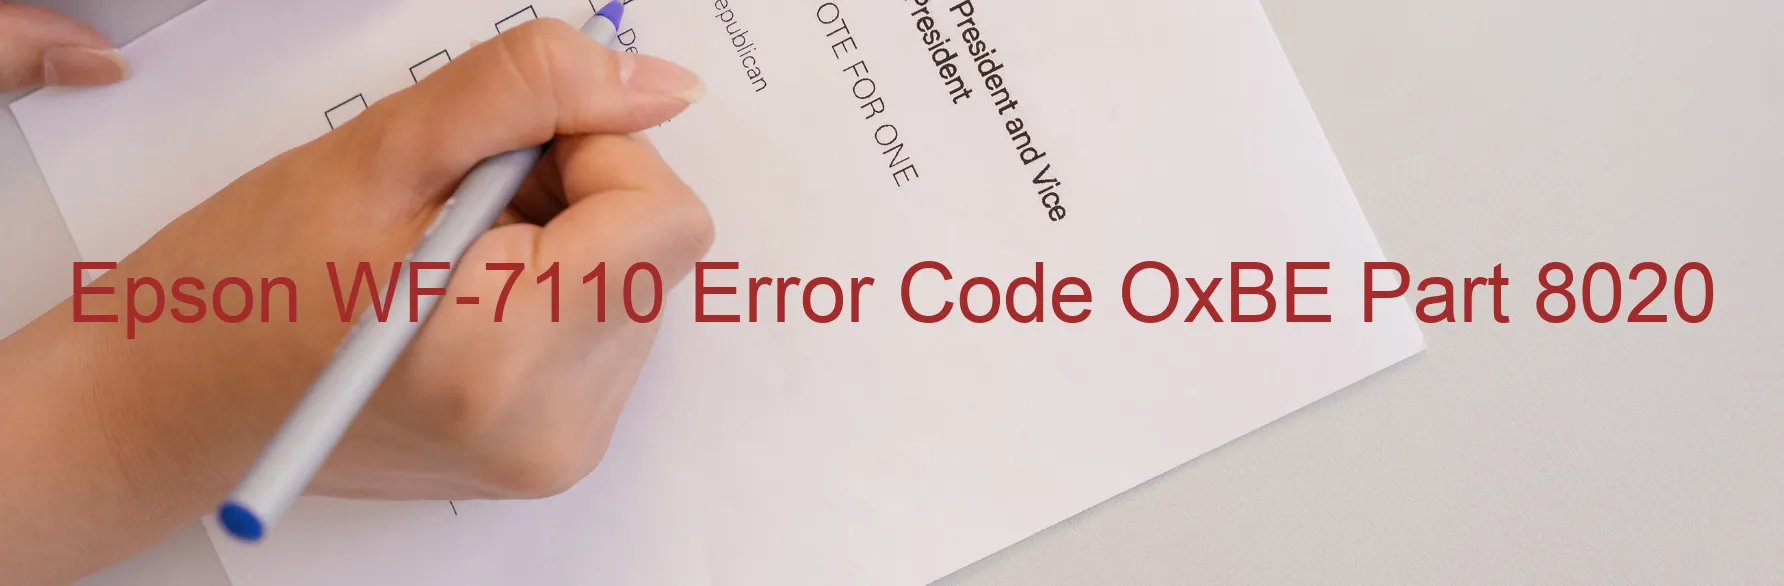 Epson WF-7110 Error Code OxBE Part 8020